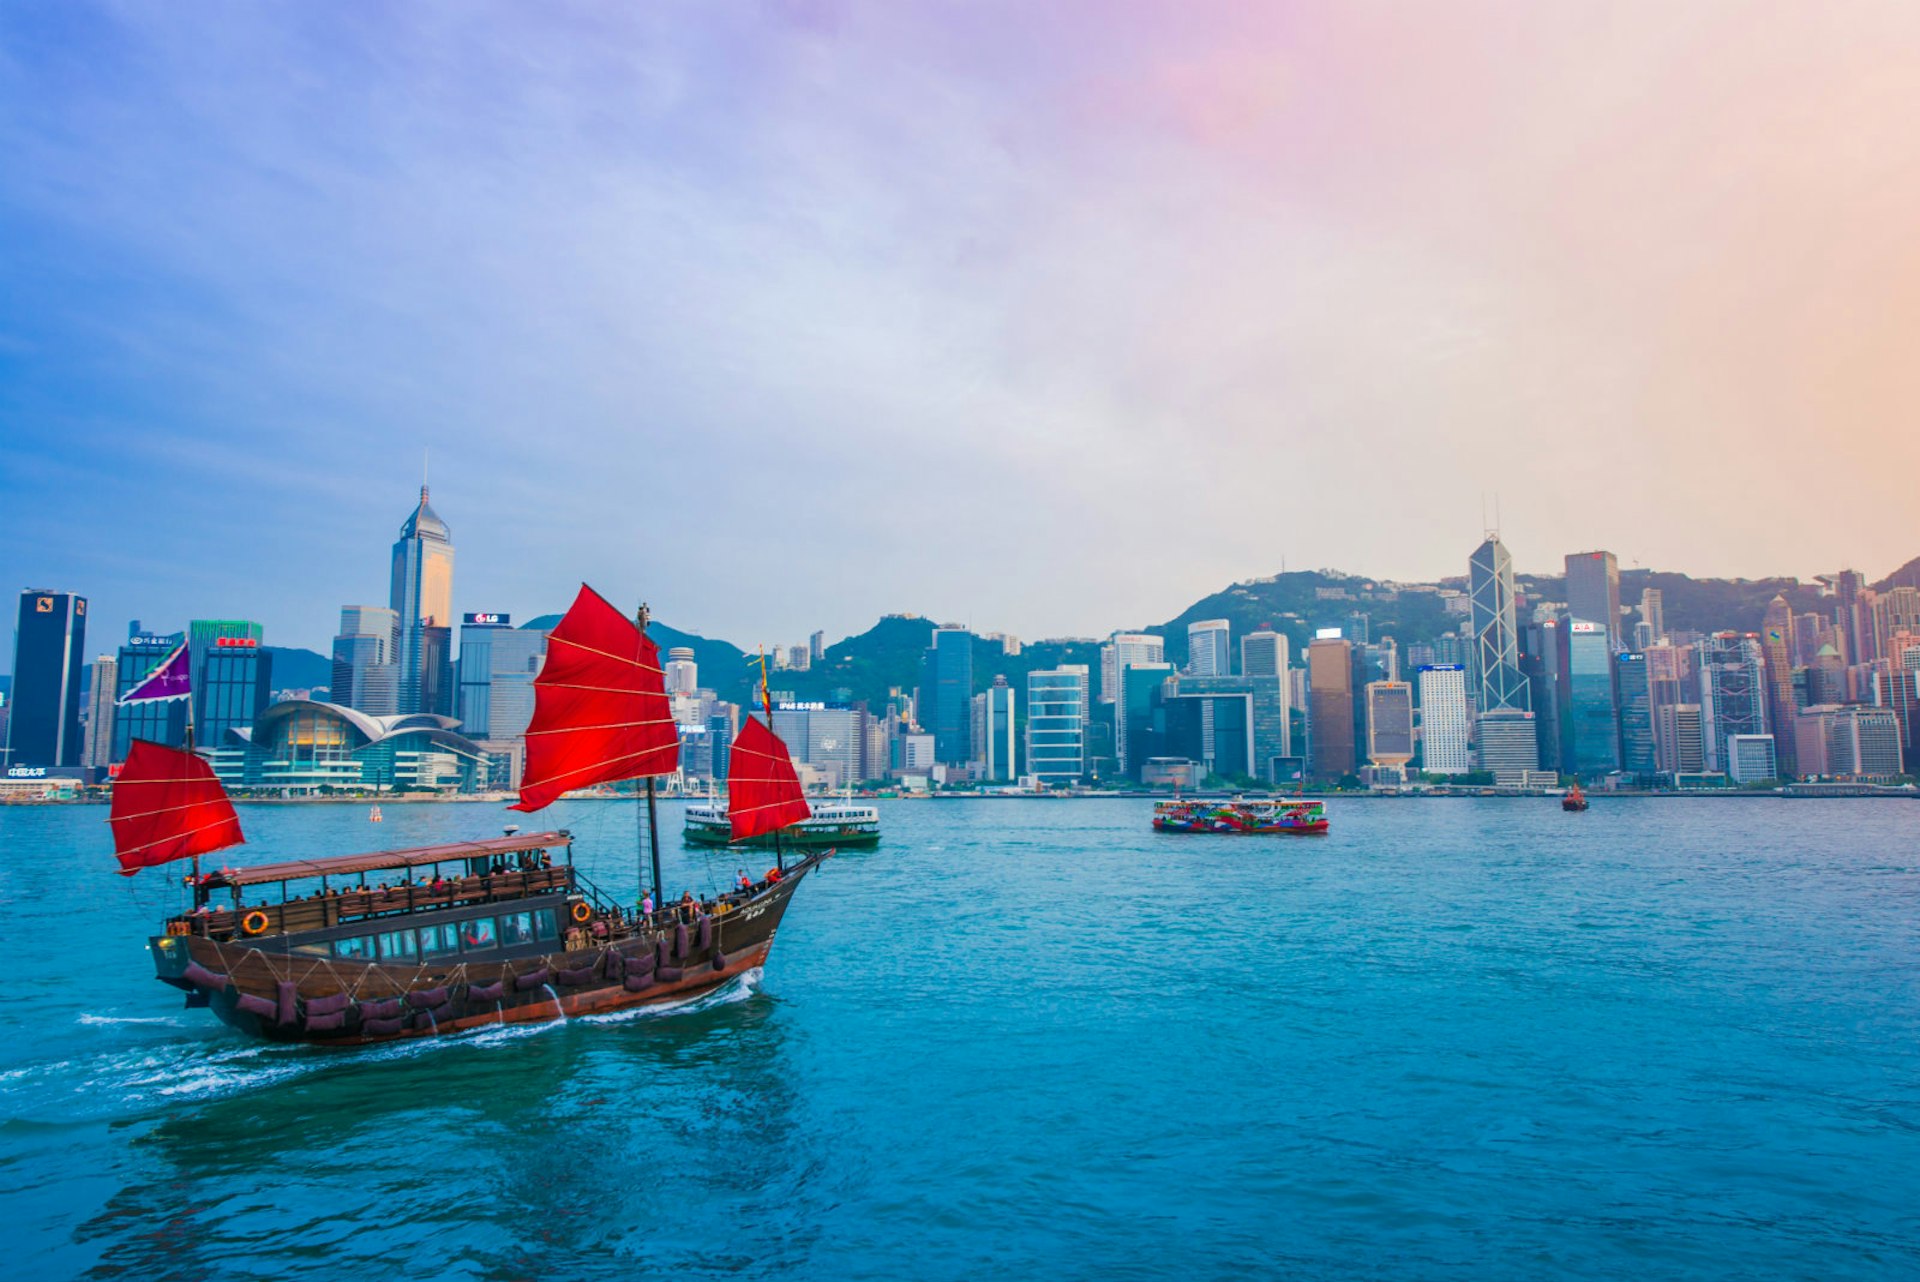 A junk boat sails towards the shores of Hong Kong